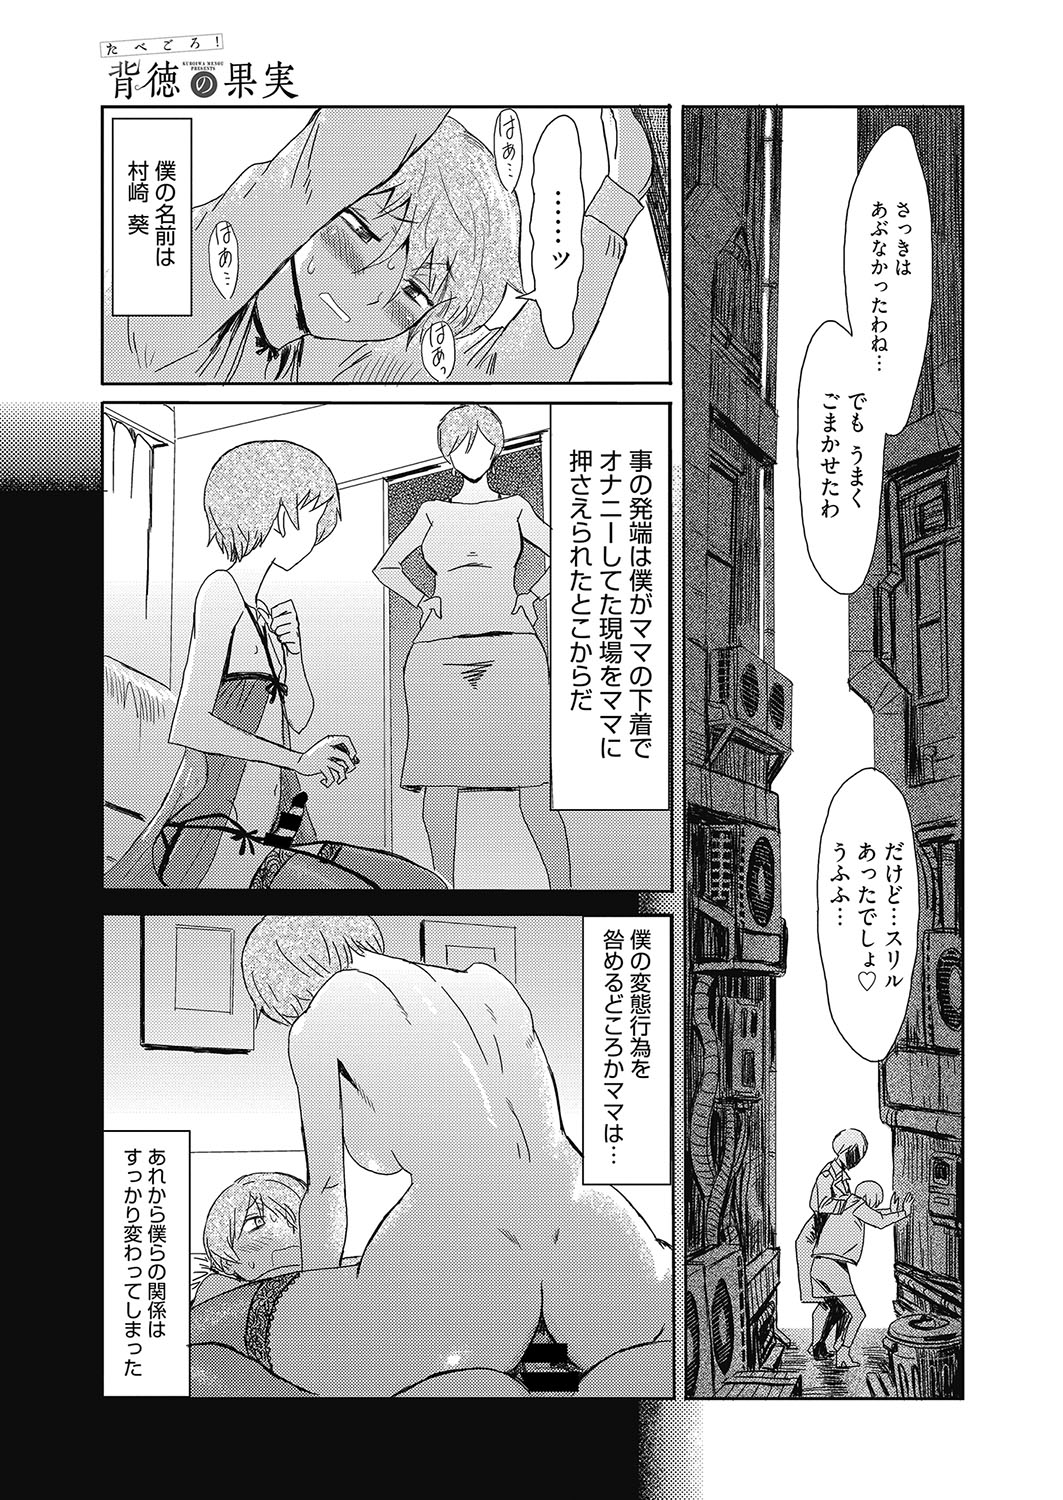 web 漫画ばんがいち Vol.26